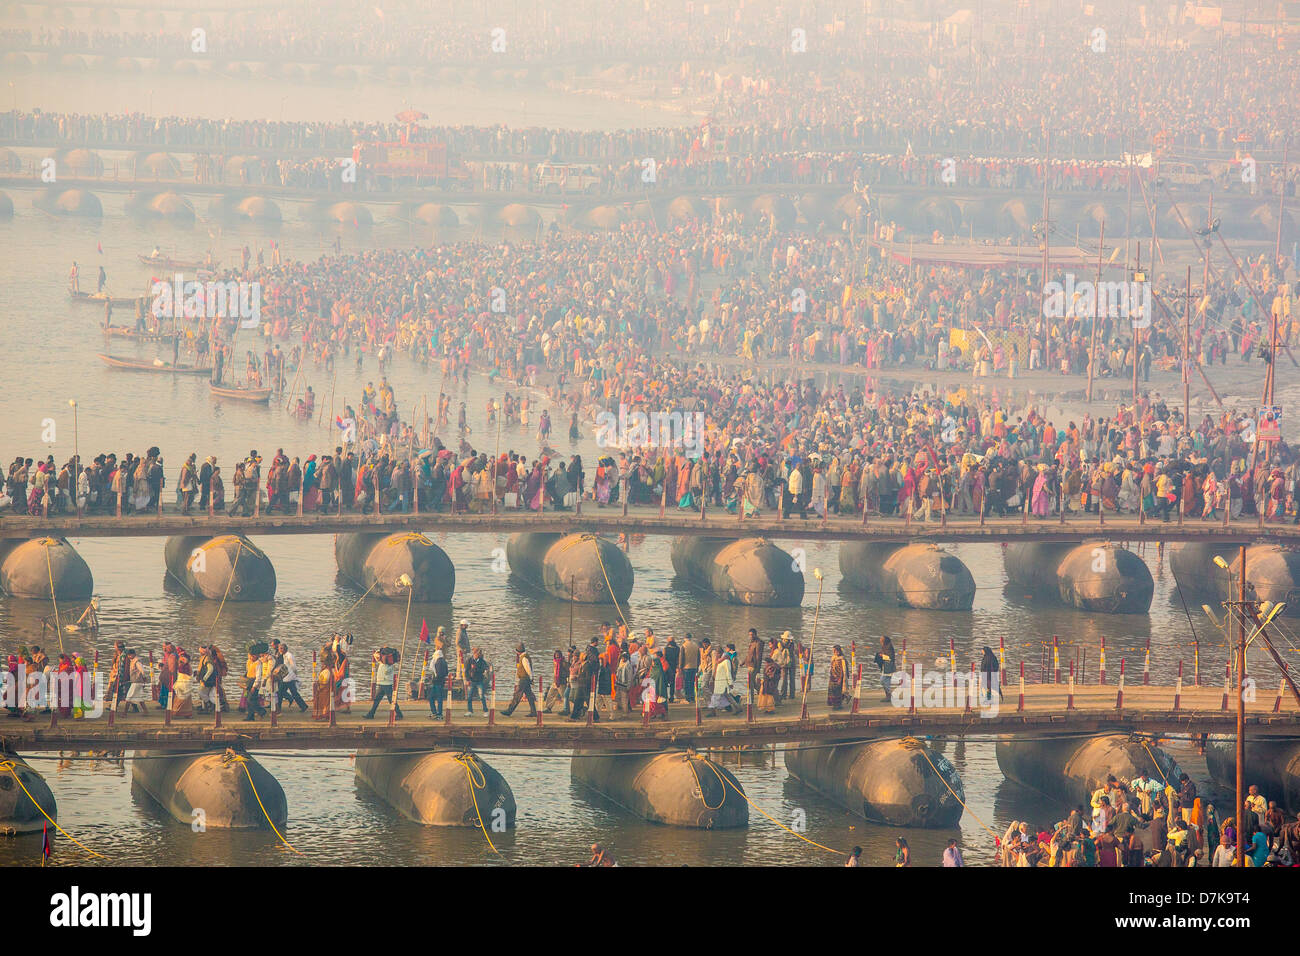 Crowded pontoon bridges during the Kumbh Mela, Allahabad, India Stock Photo